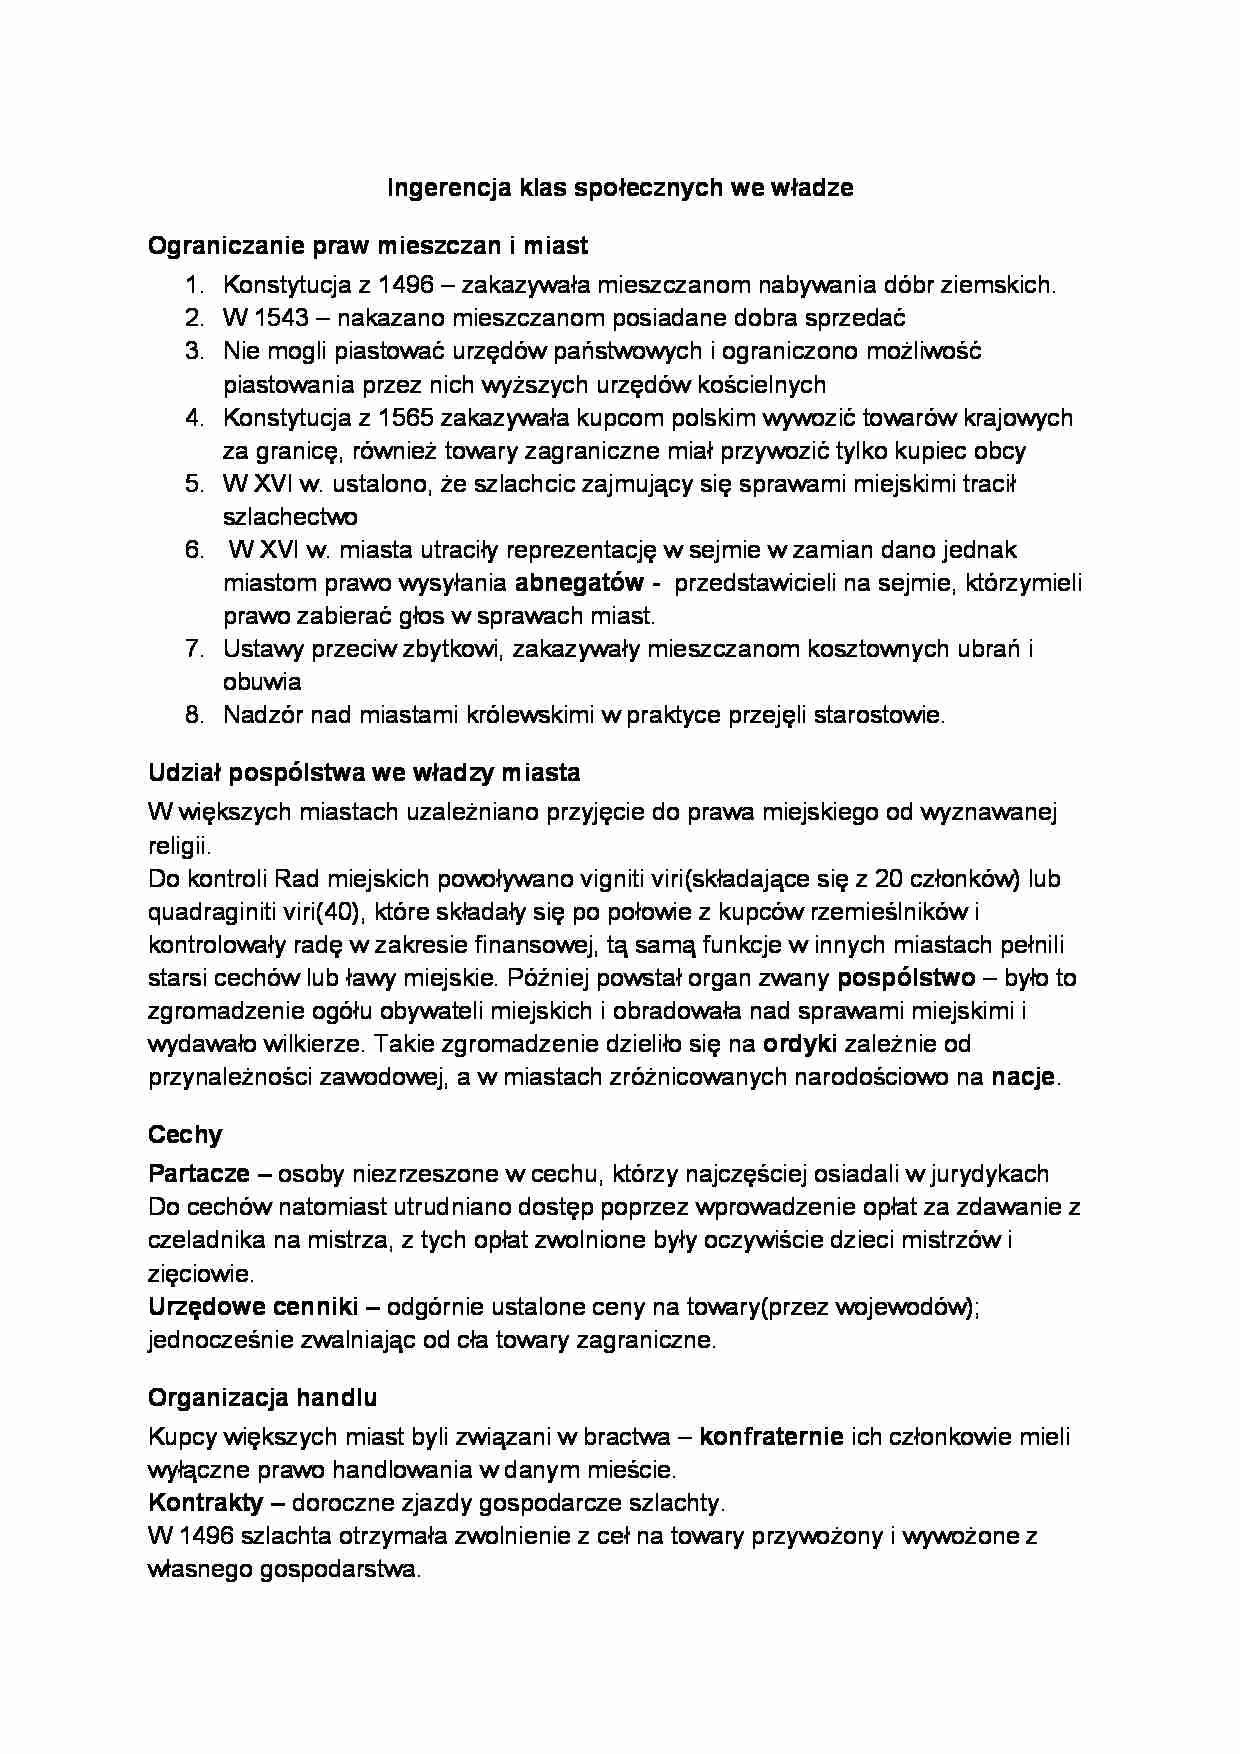 Rzeczpospolita szlachecka -Ingerencja klas społecznych we władze - strona 1